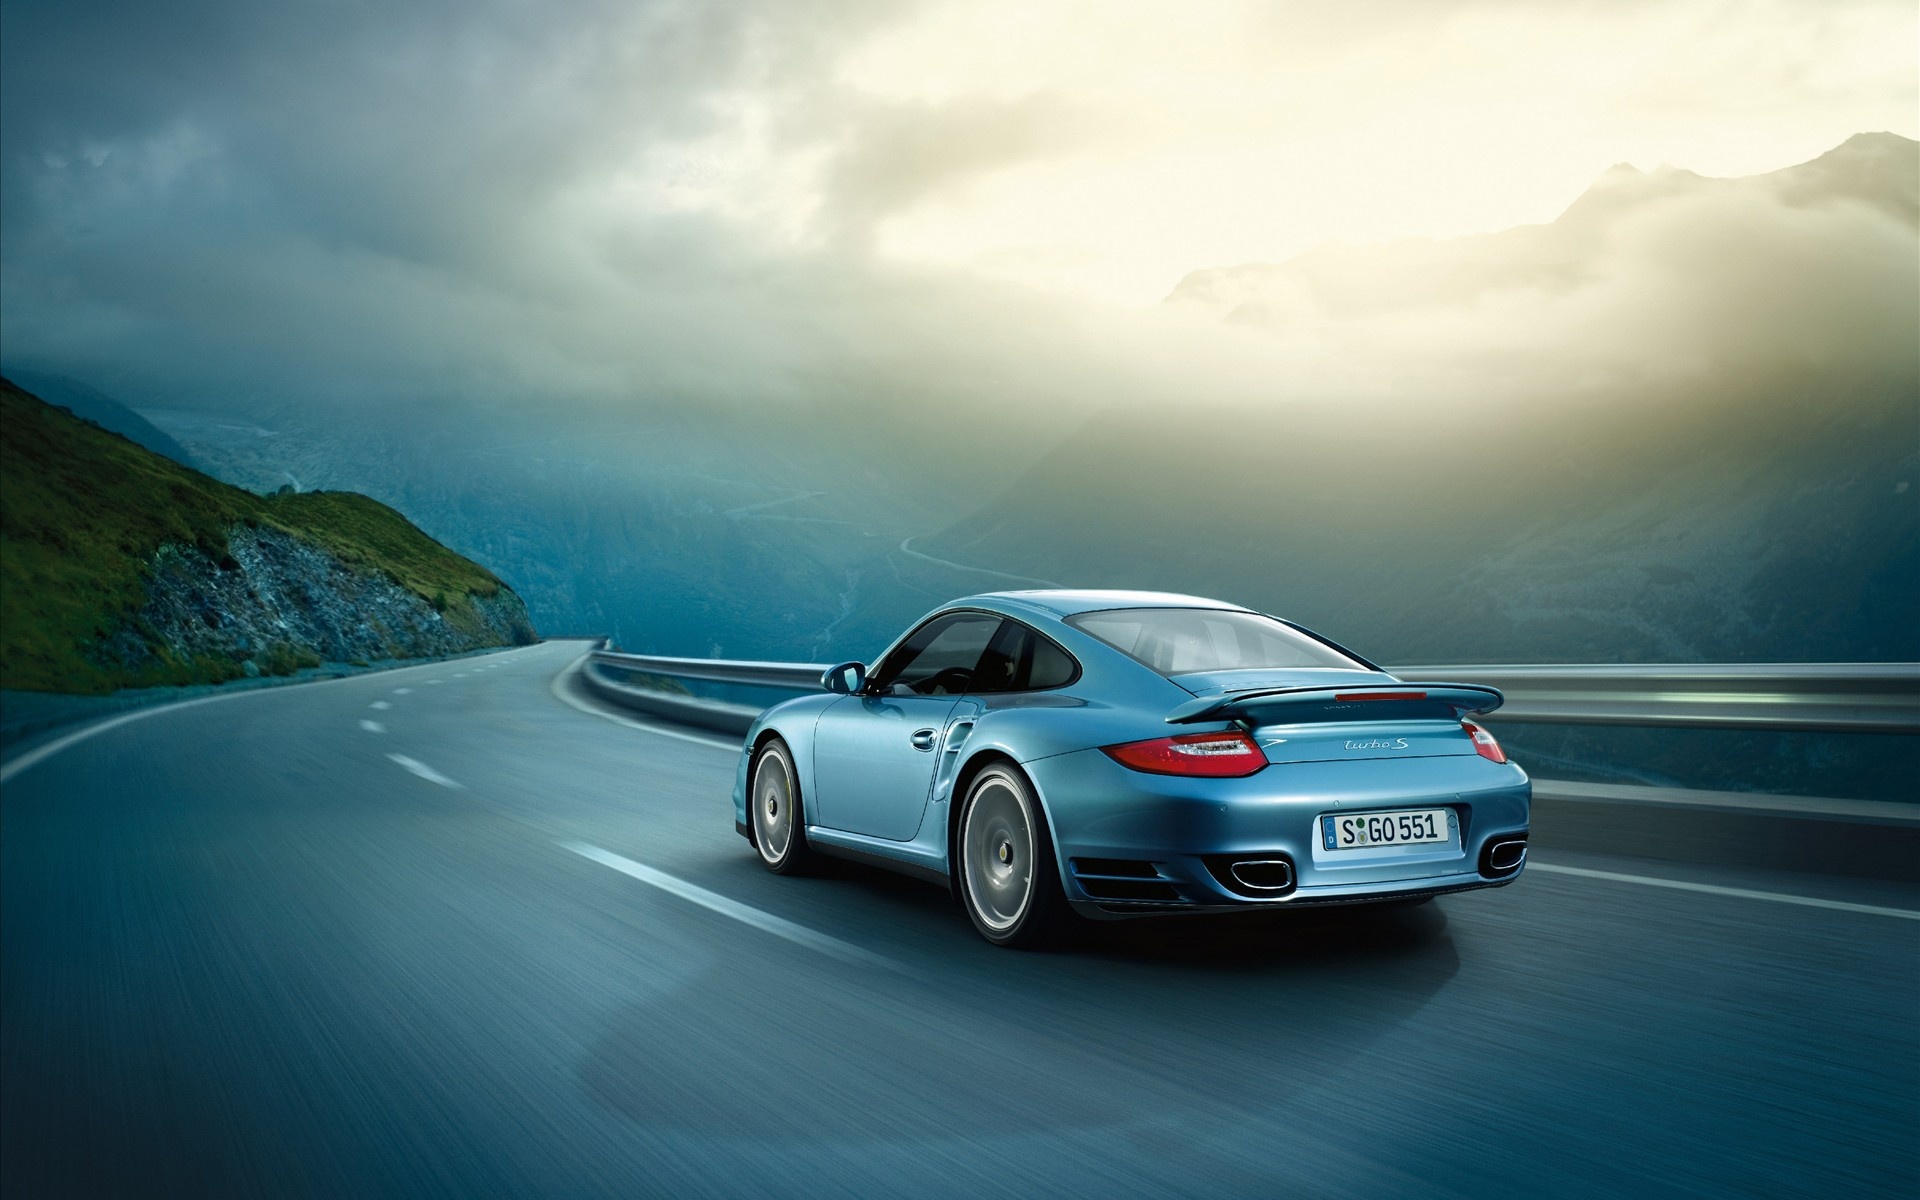 Descarga gratuita de fondo de pantalla para móvil de Porsche, Carretera, Vehículos, Porsche 911 Turbo.